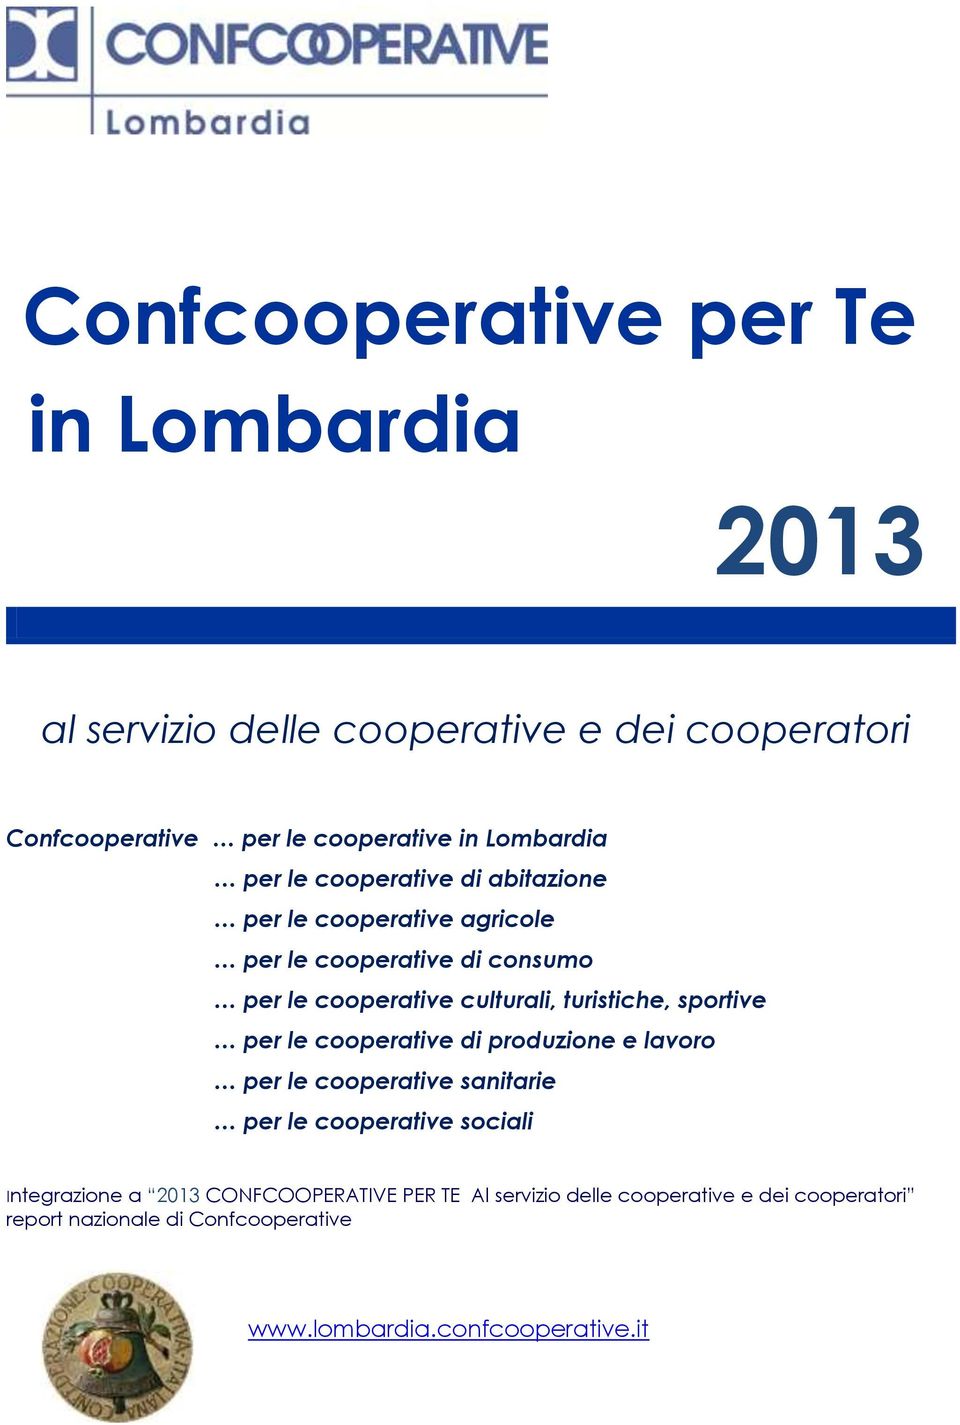 sportive per le cooperative di produzione e lavoro per le cooperative sanitarie per le cooperative sociali Integrazione a 2013